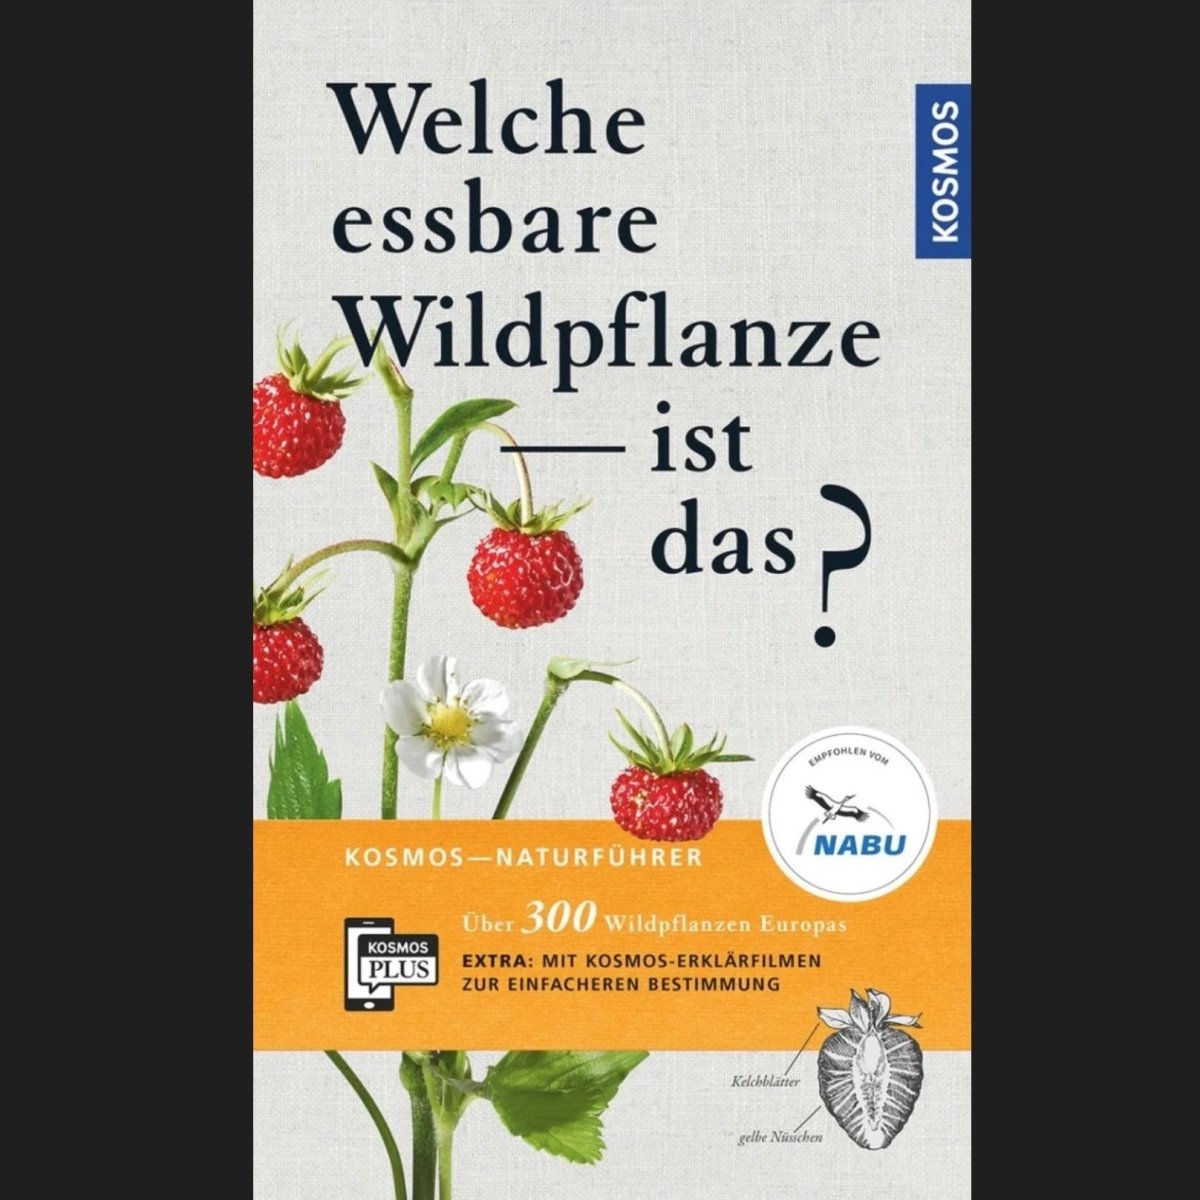 Wildkräuterbuch: Welche essbare Wildpflanze - ist das?